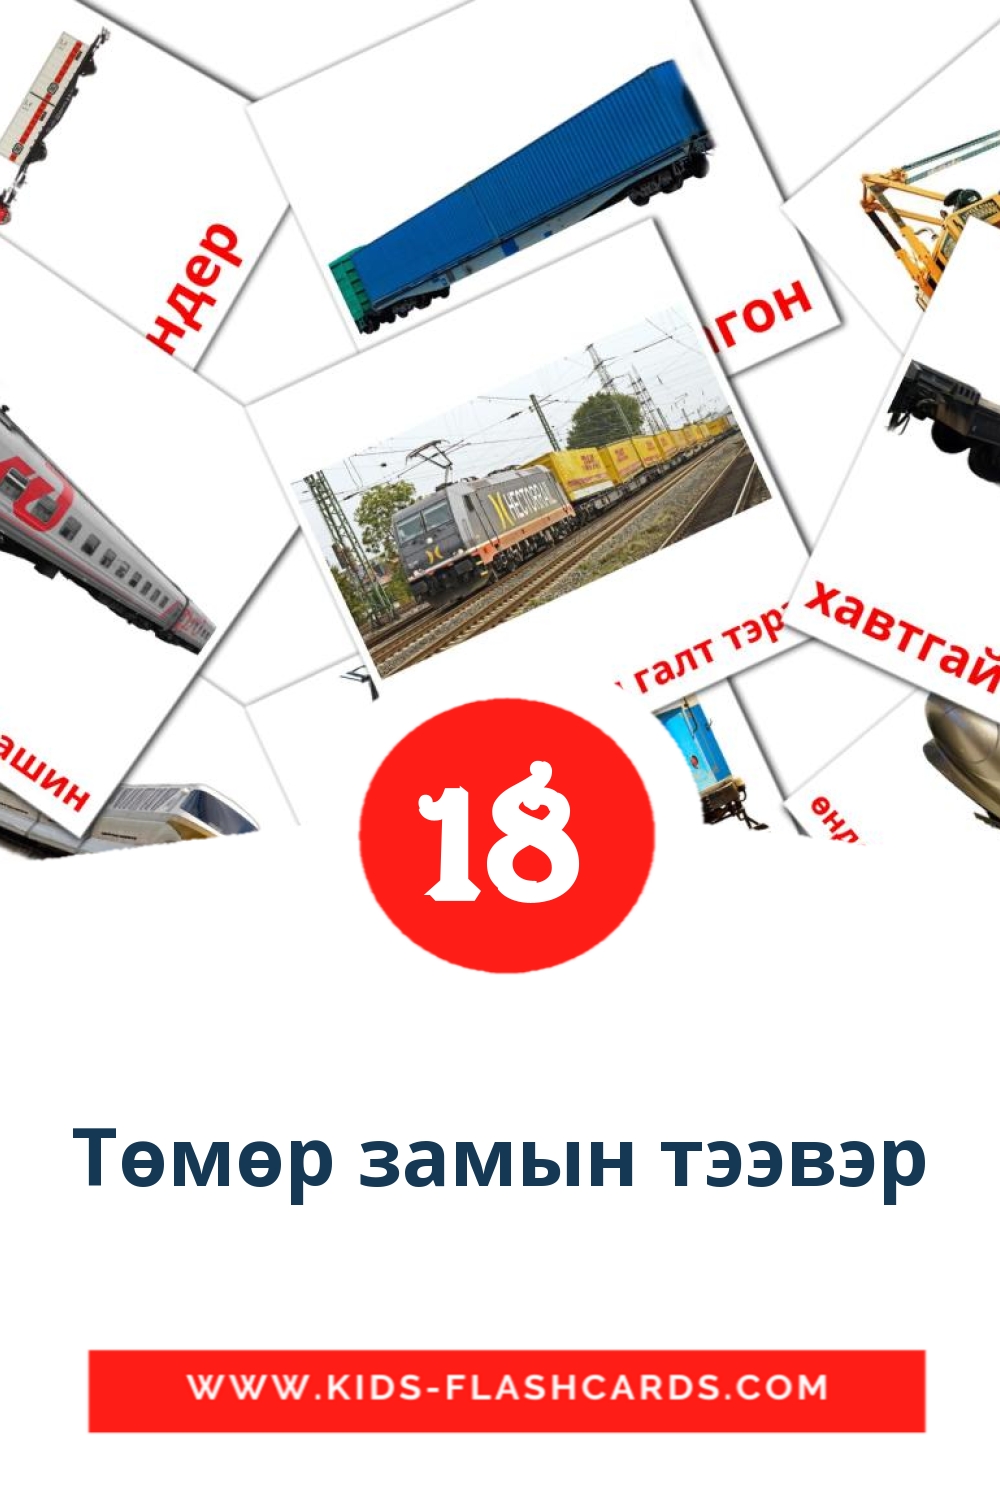 18 carte illustrate di Төмөр замын тээвэр per la scuola materna in mongolo